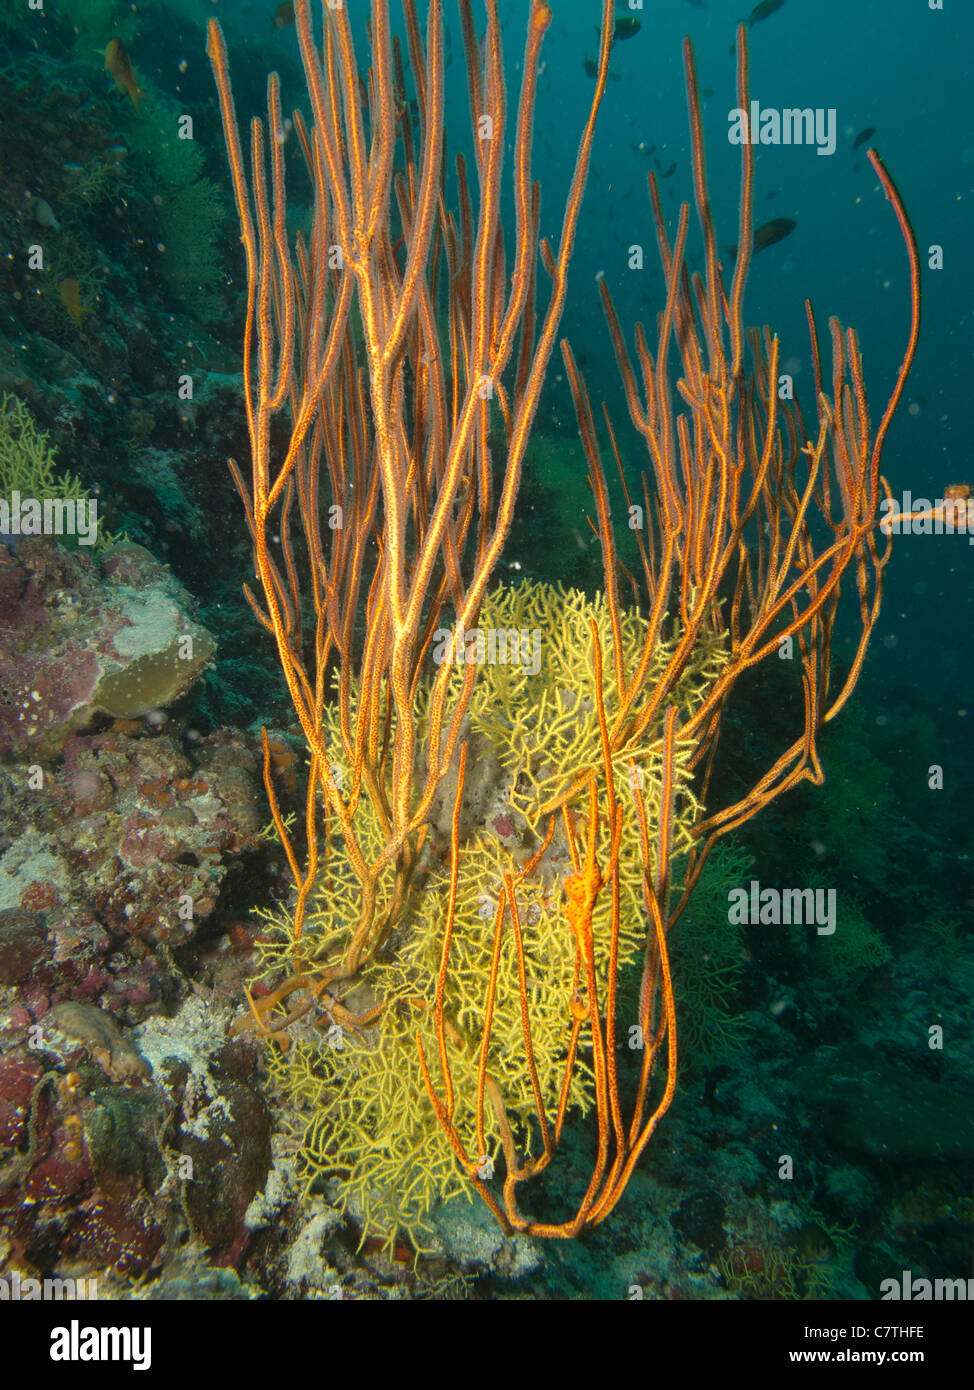 Nette und schöne Zusammenleben verschiedener Arten unter Wasser. Stockfoto